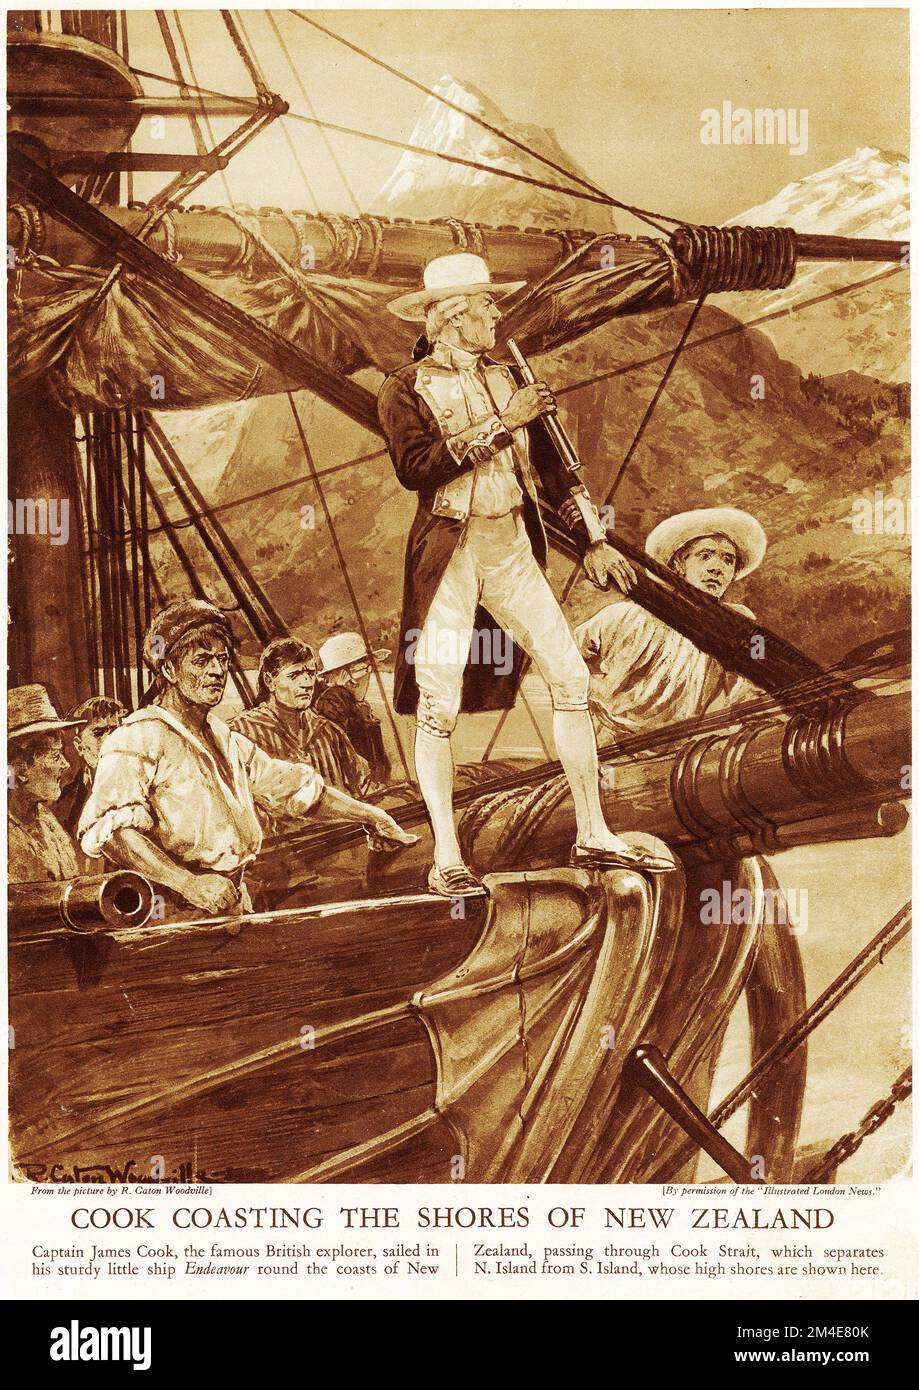 Semitono del capitán James Cook navegando por las costas de Nueva Zelanda, vistiendo un sombrero muy extravagante! De una publicación educativa en 1927. Cook hizo tres visitas a Nueva Zelanda en la década de 1700s Foto de stock